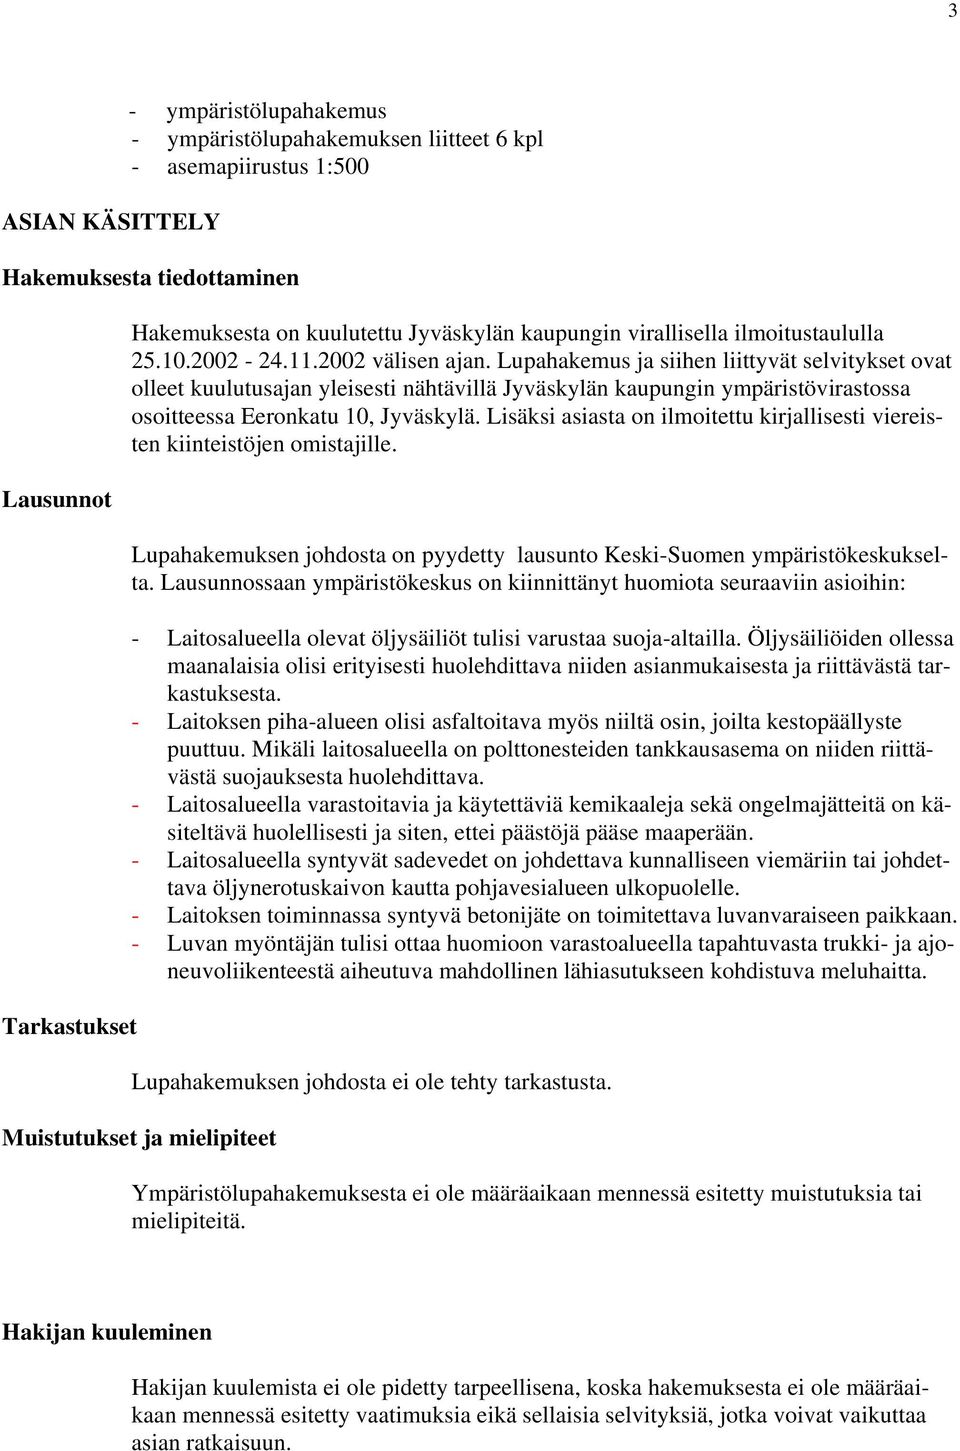 Lupahakemus ja siihen liittyvät selvitykset ovat olleet kuulutusajan yleisesti nähtävillä Jyväskylän kaupungin ympäristövirastossa osoitteessa Eeronkatu 10, Jyväskylä.